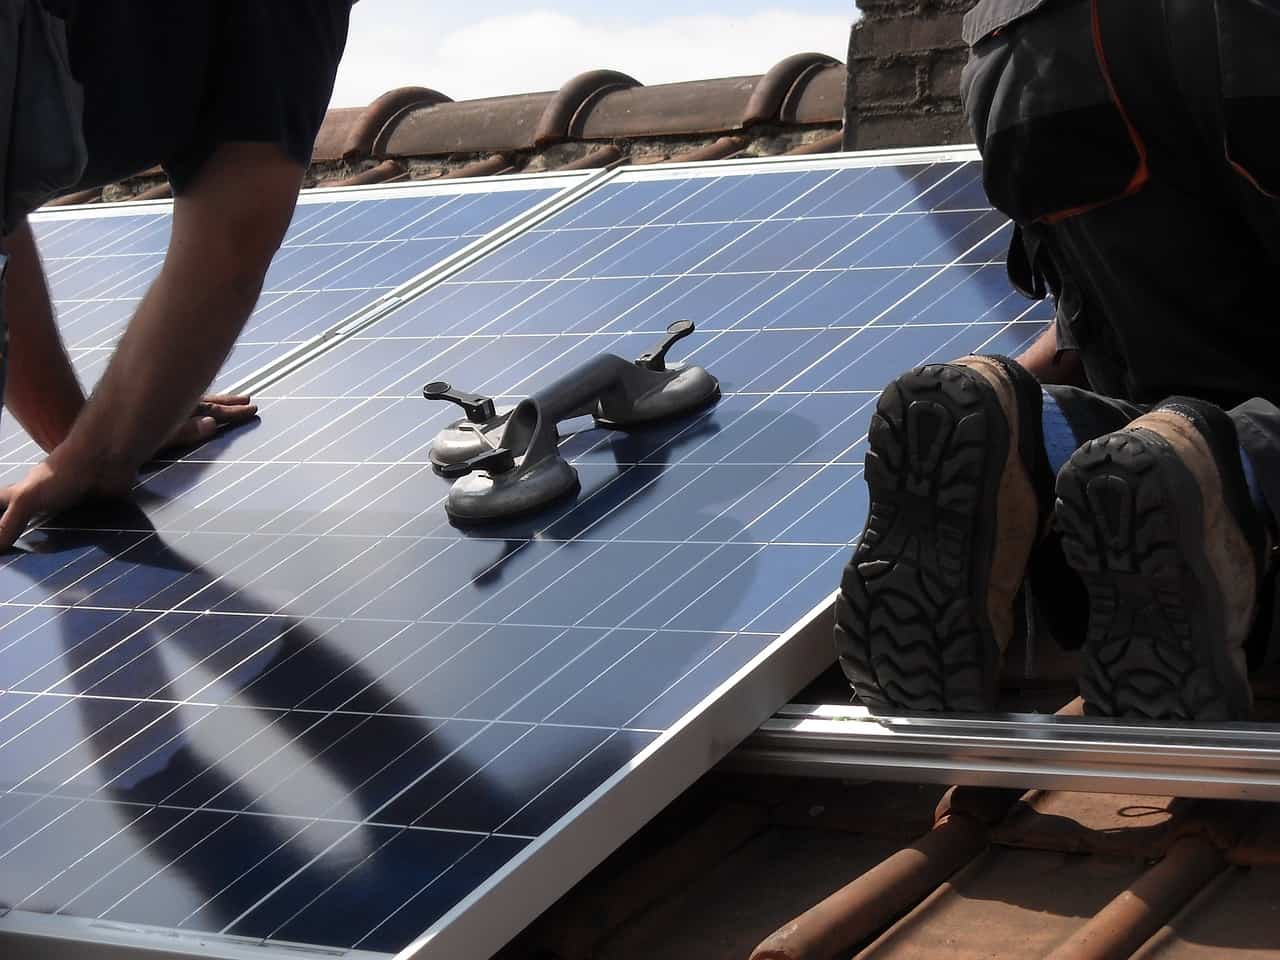 Installazione pannelli solari su tetto abitazione